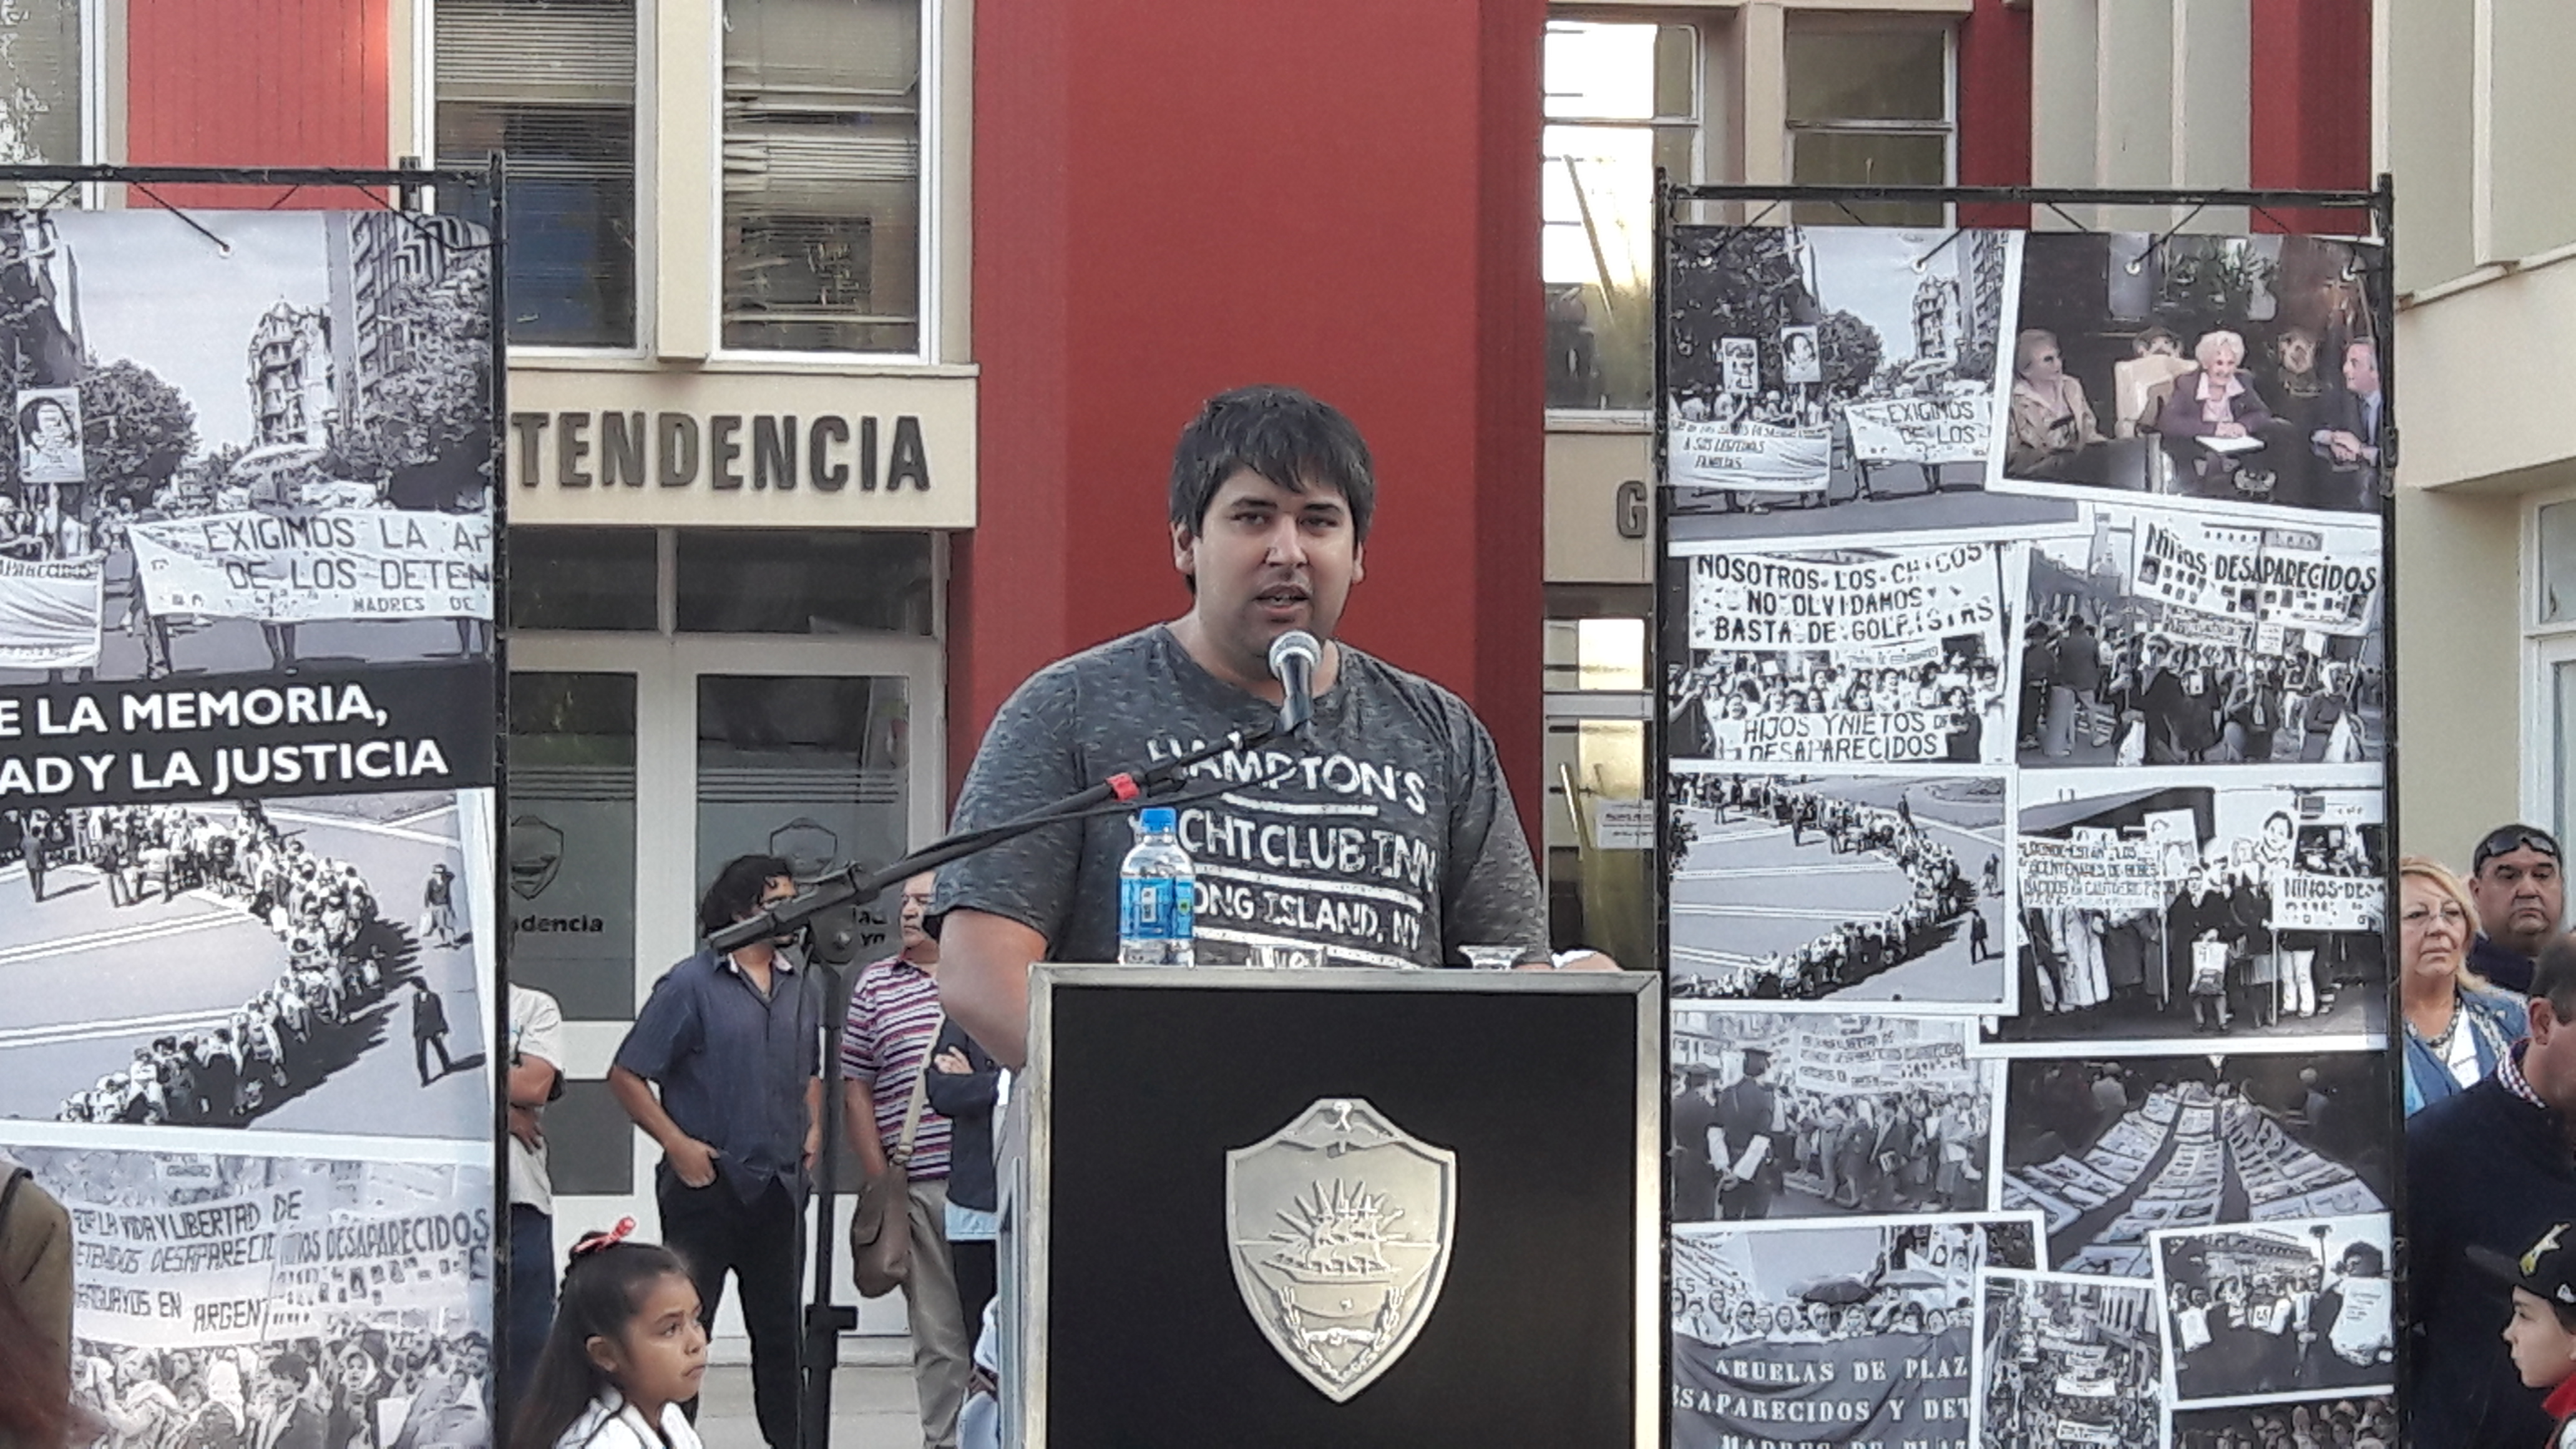 Gastón Medina: “Construir conciencia ciudadana y democrática”